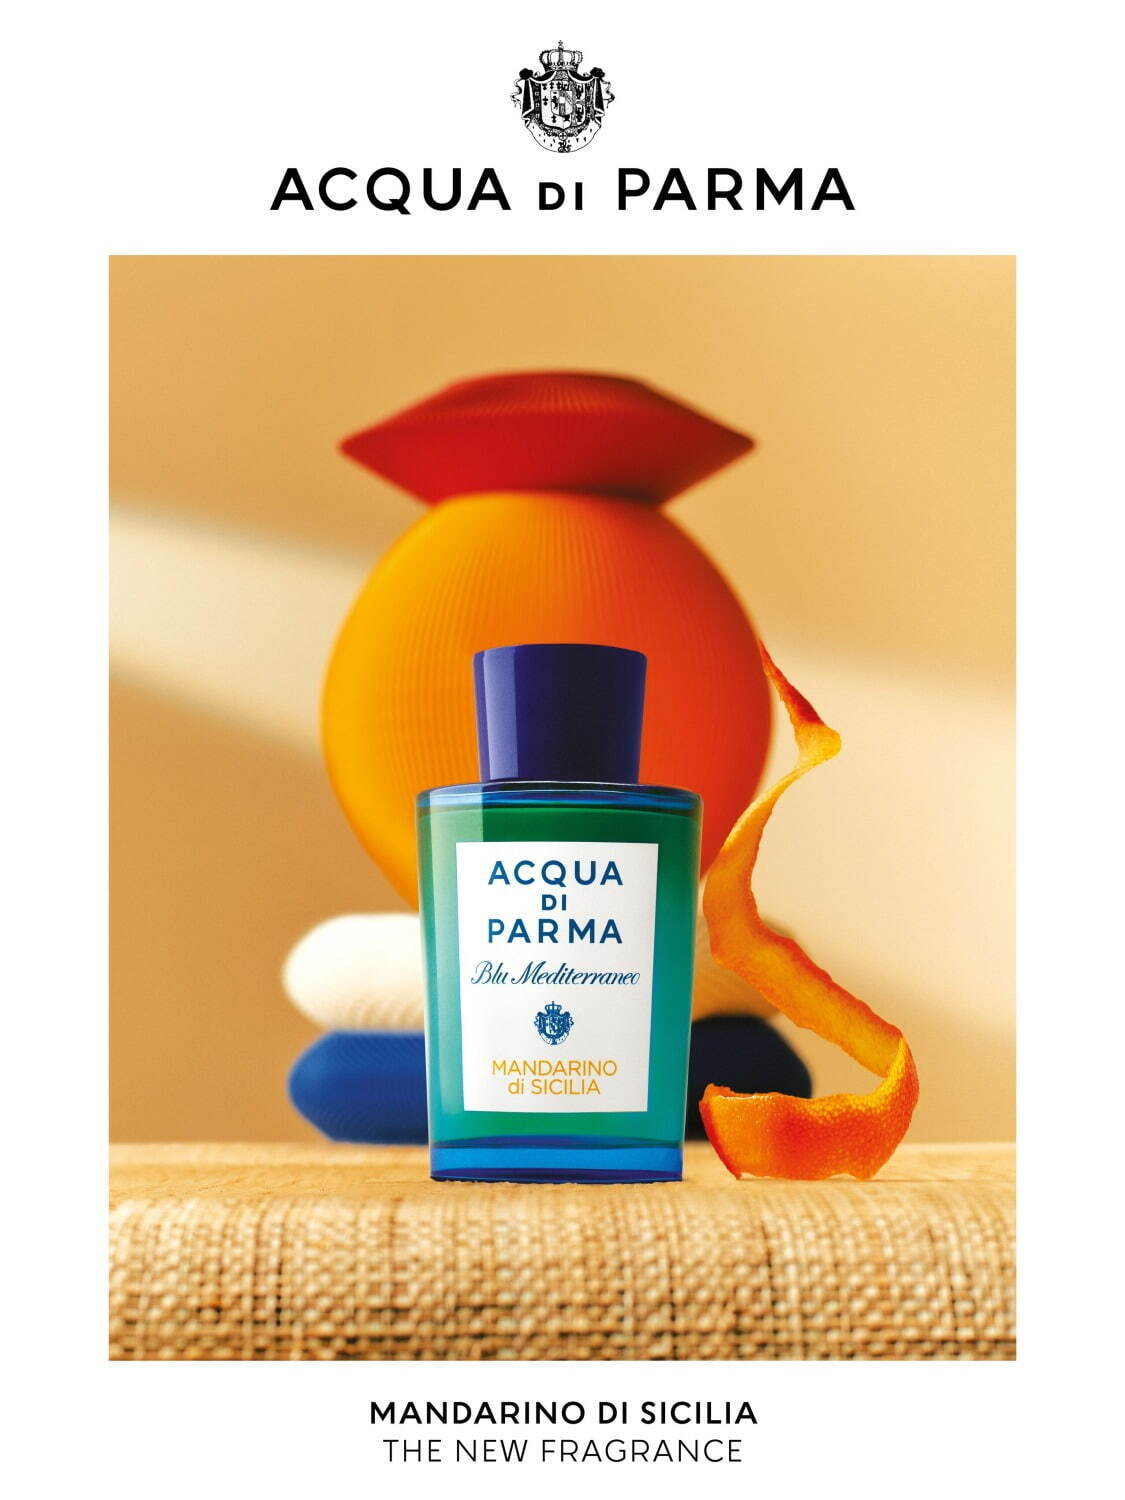 アクア ディ パルマ24年夏フレグランス、“シチリアの夏”着想の弾けるような柑橘の香り - ファッションプレス